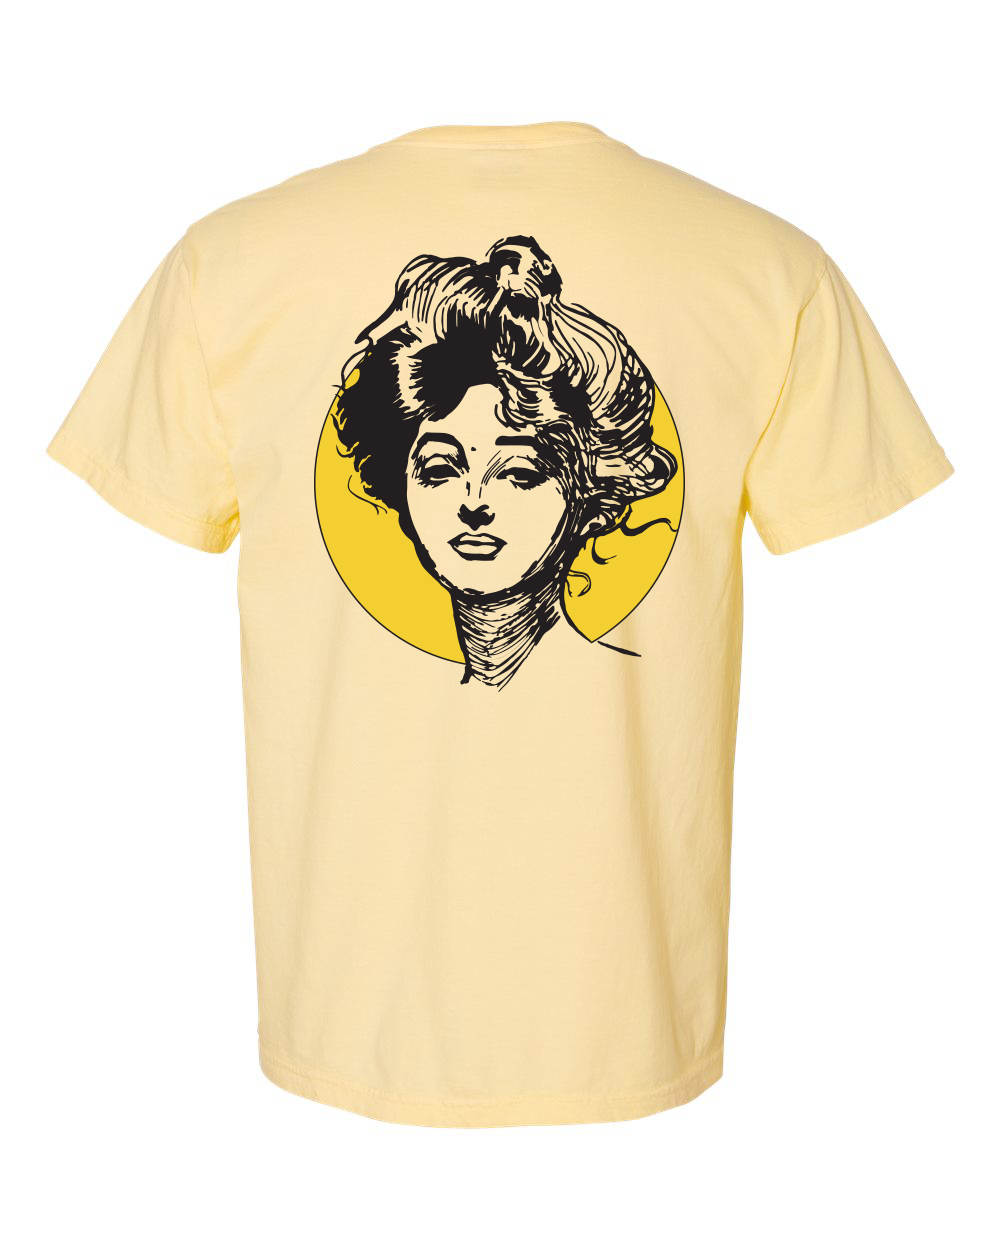 Golden Girl unisex short sleeve t-shirt